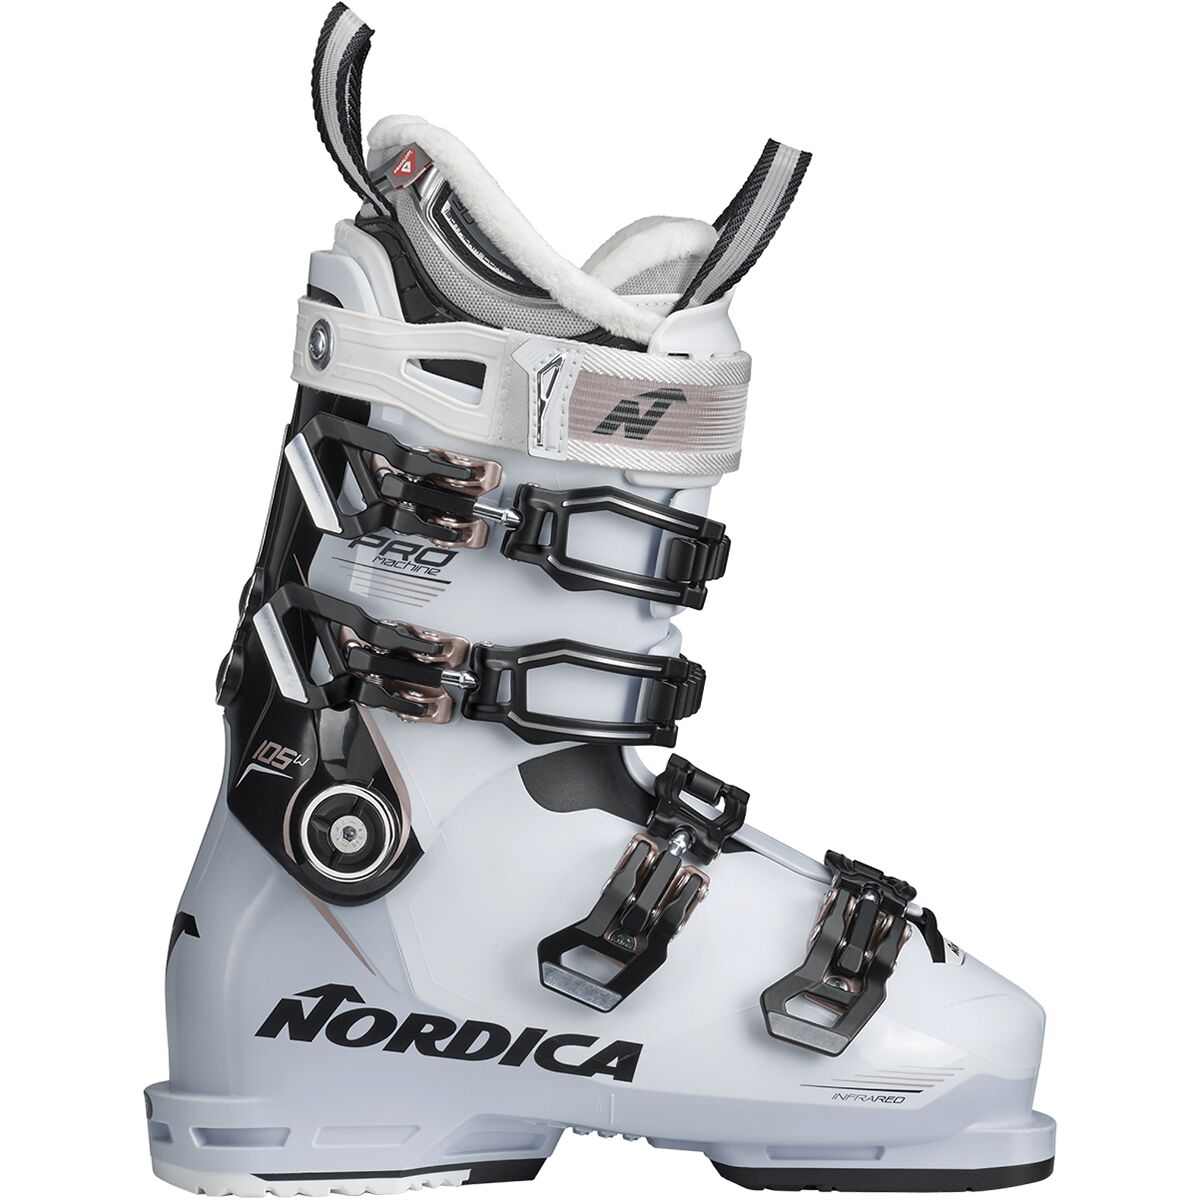 Nordica One 40 W Ski Skiing Boots Gray Mondo 23.5 Womens 6.5